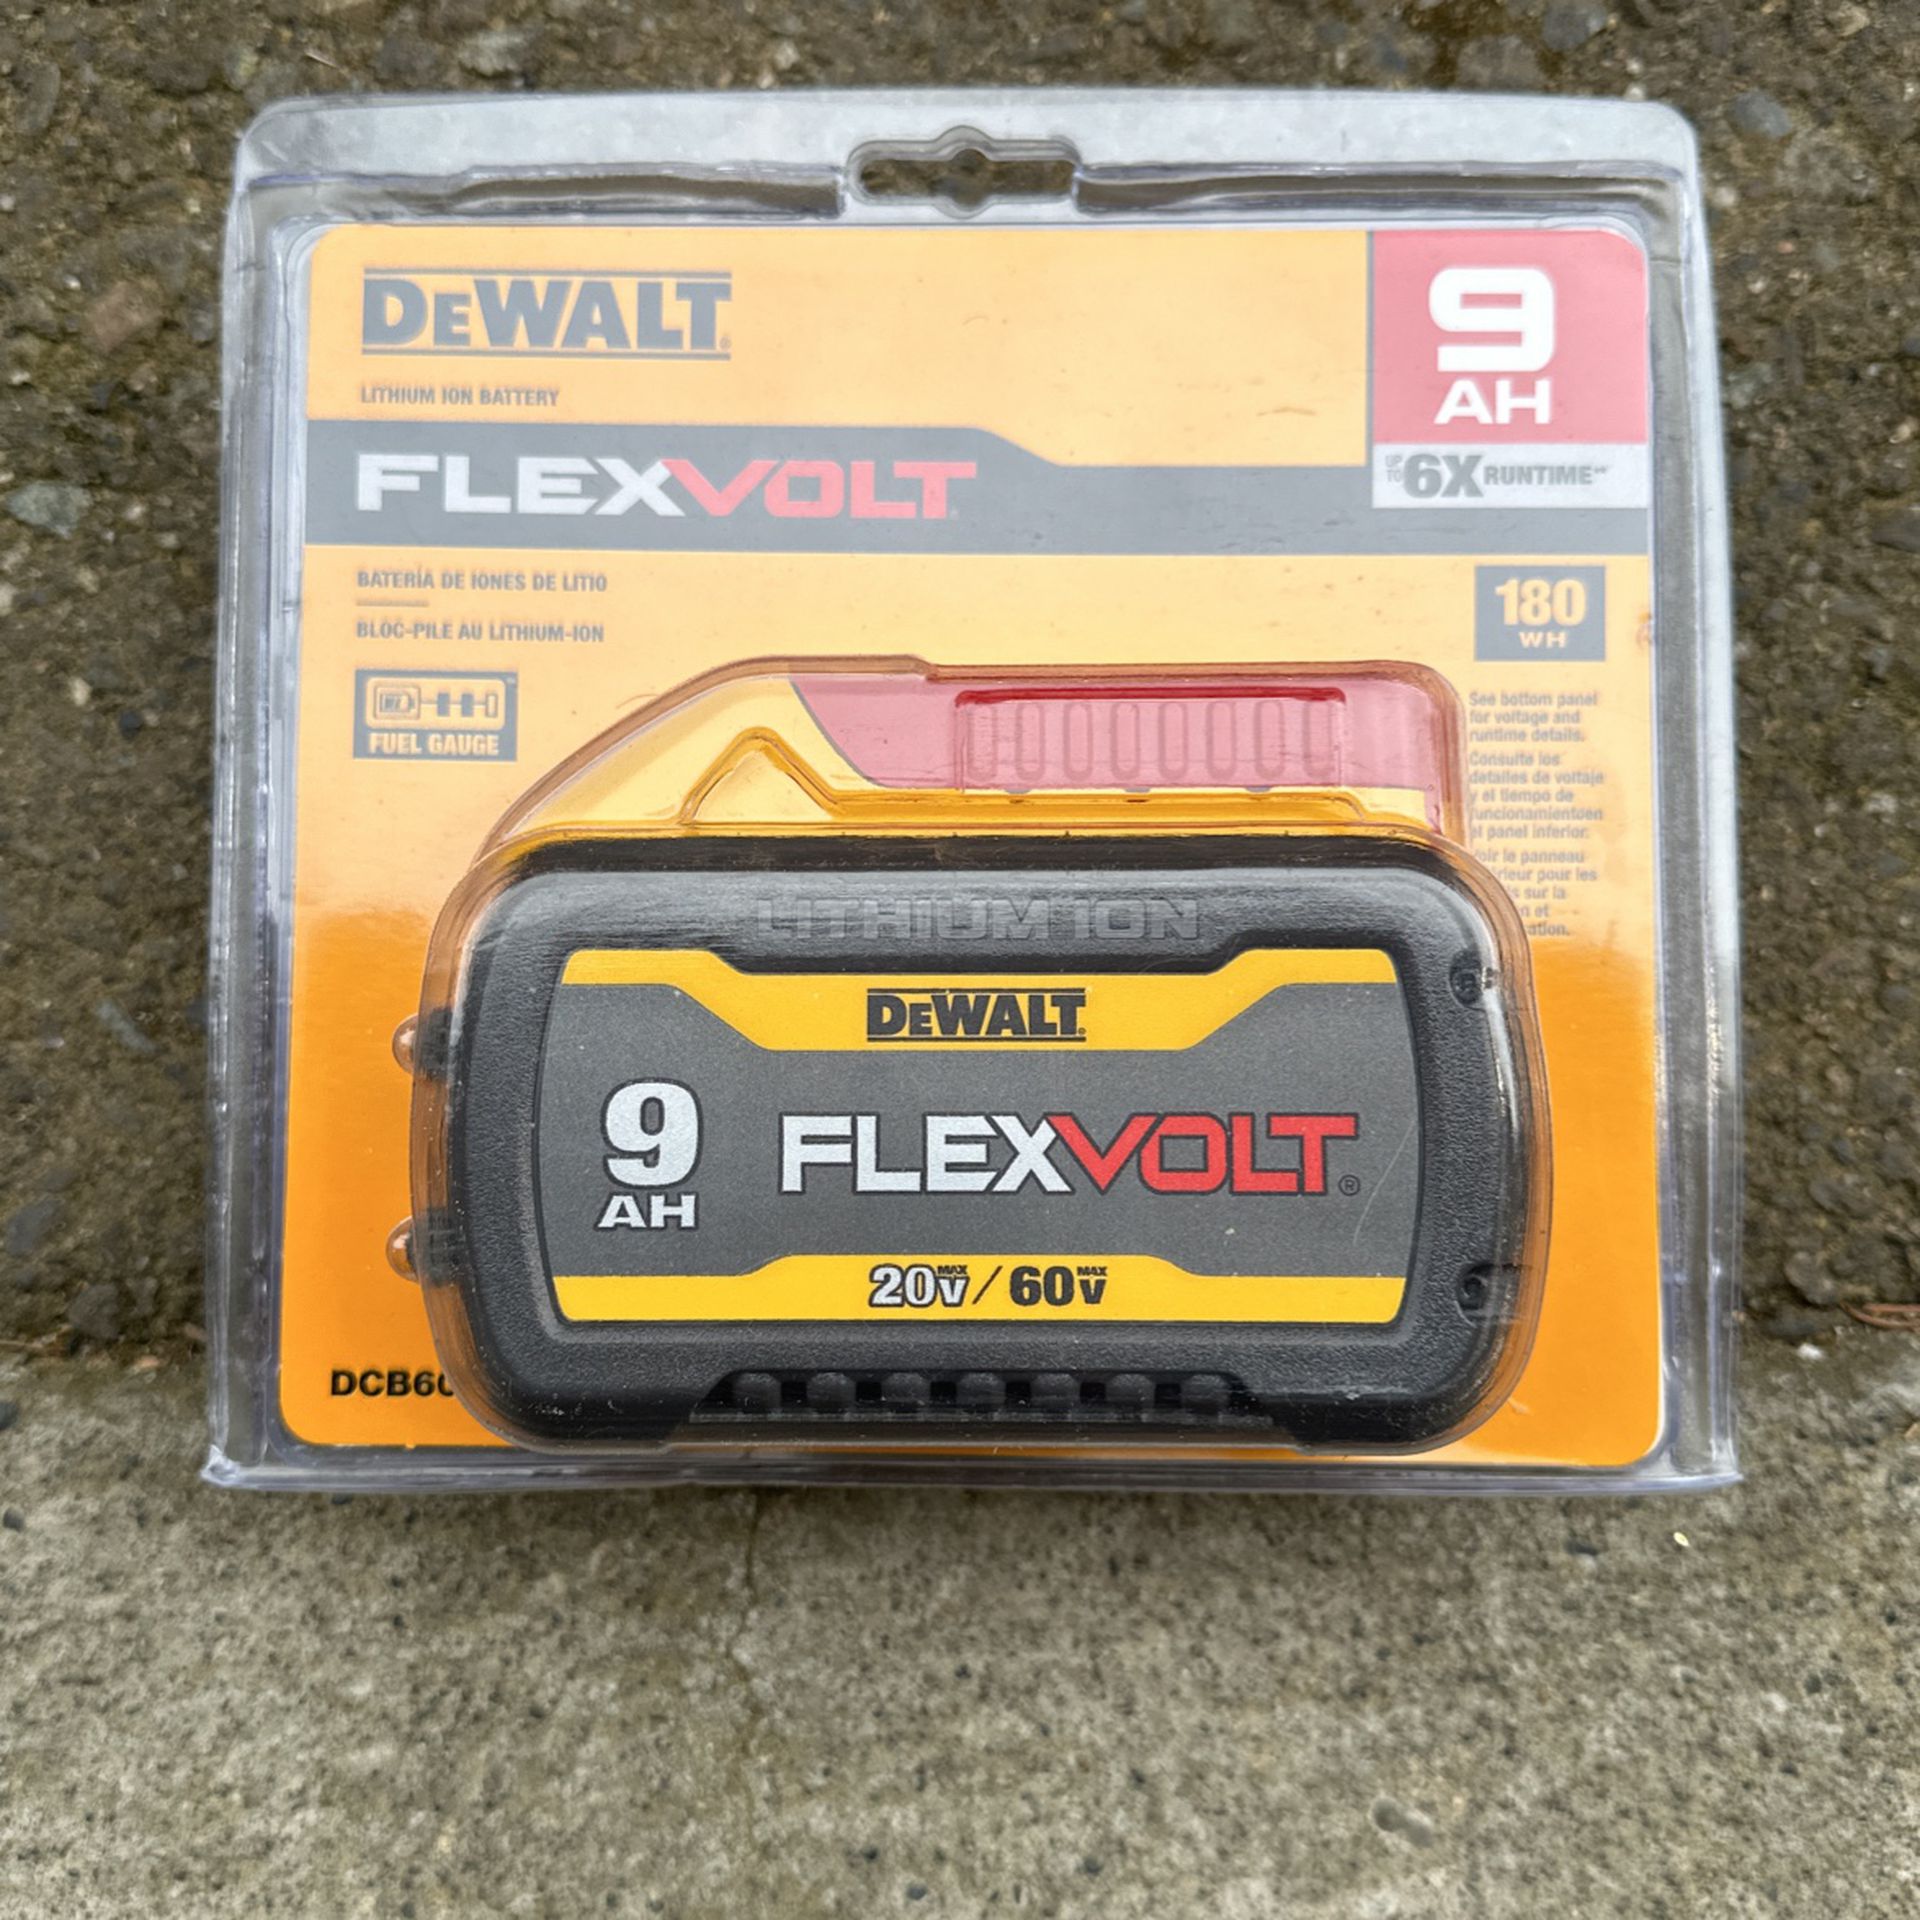 Dewalt 9ah Flexvolt Battery 